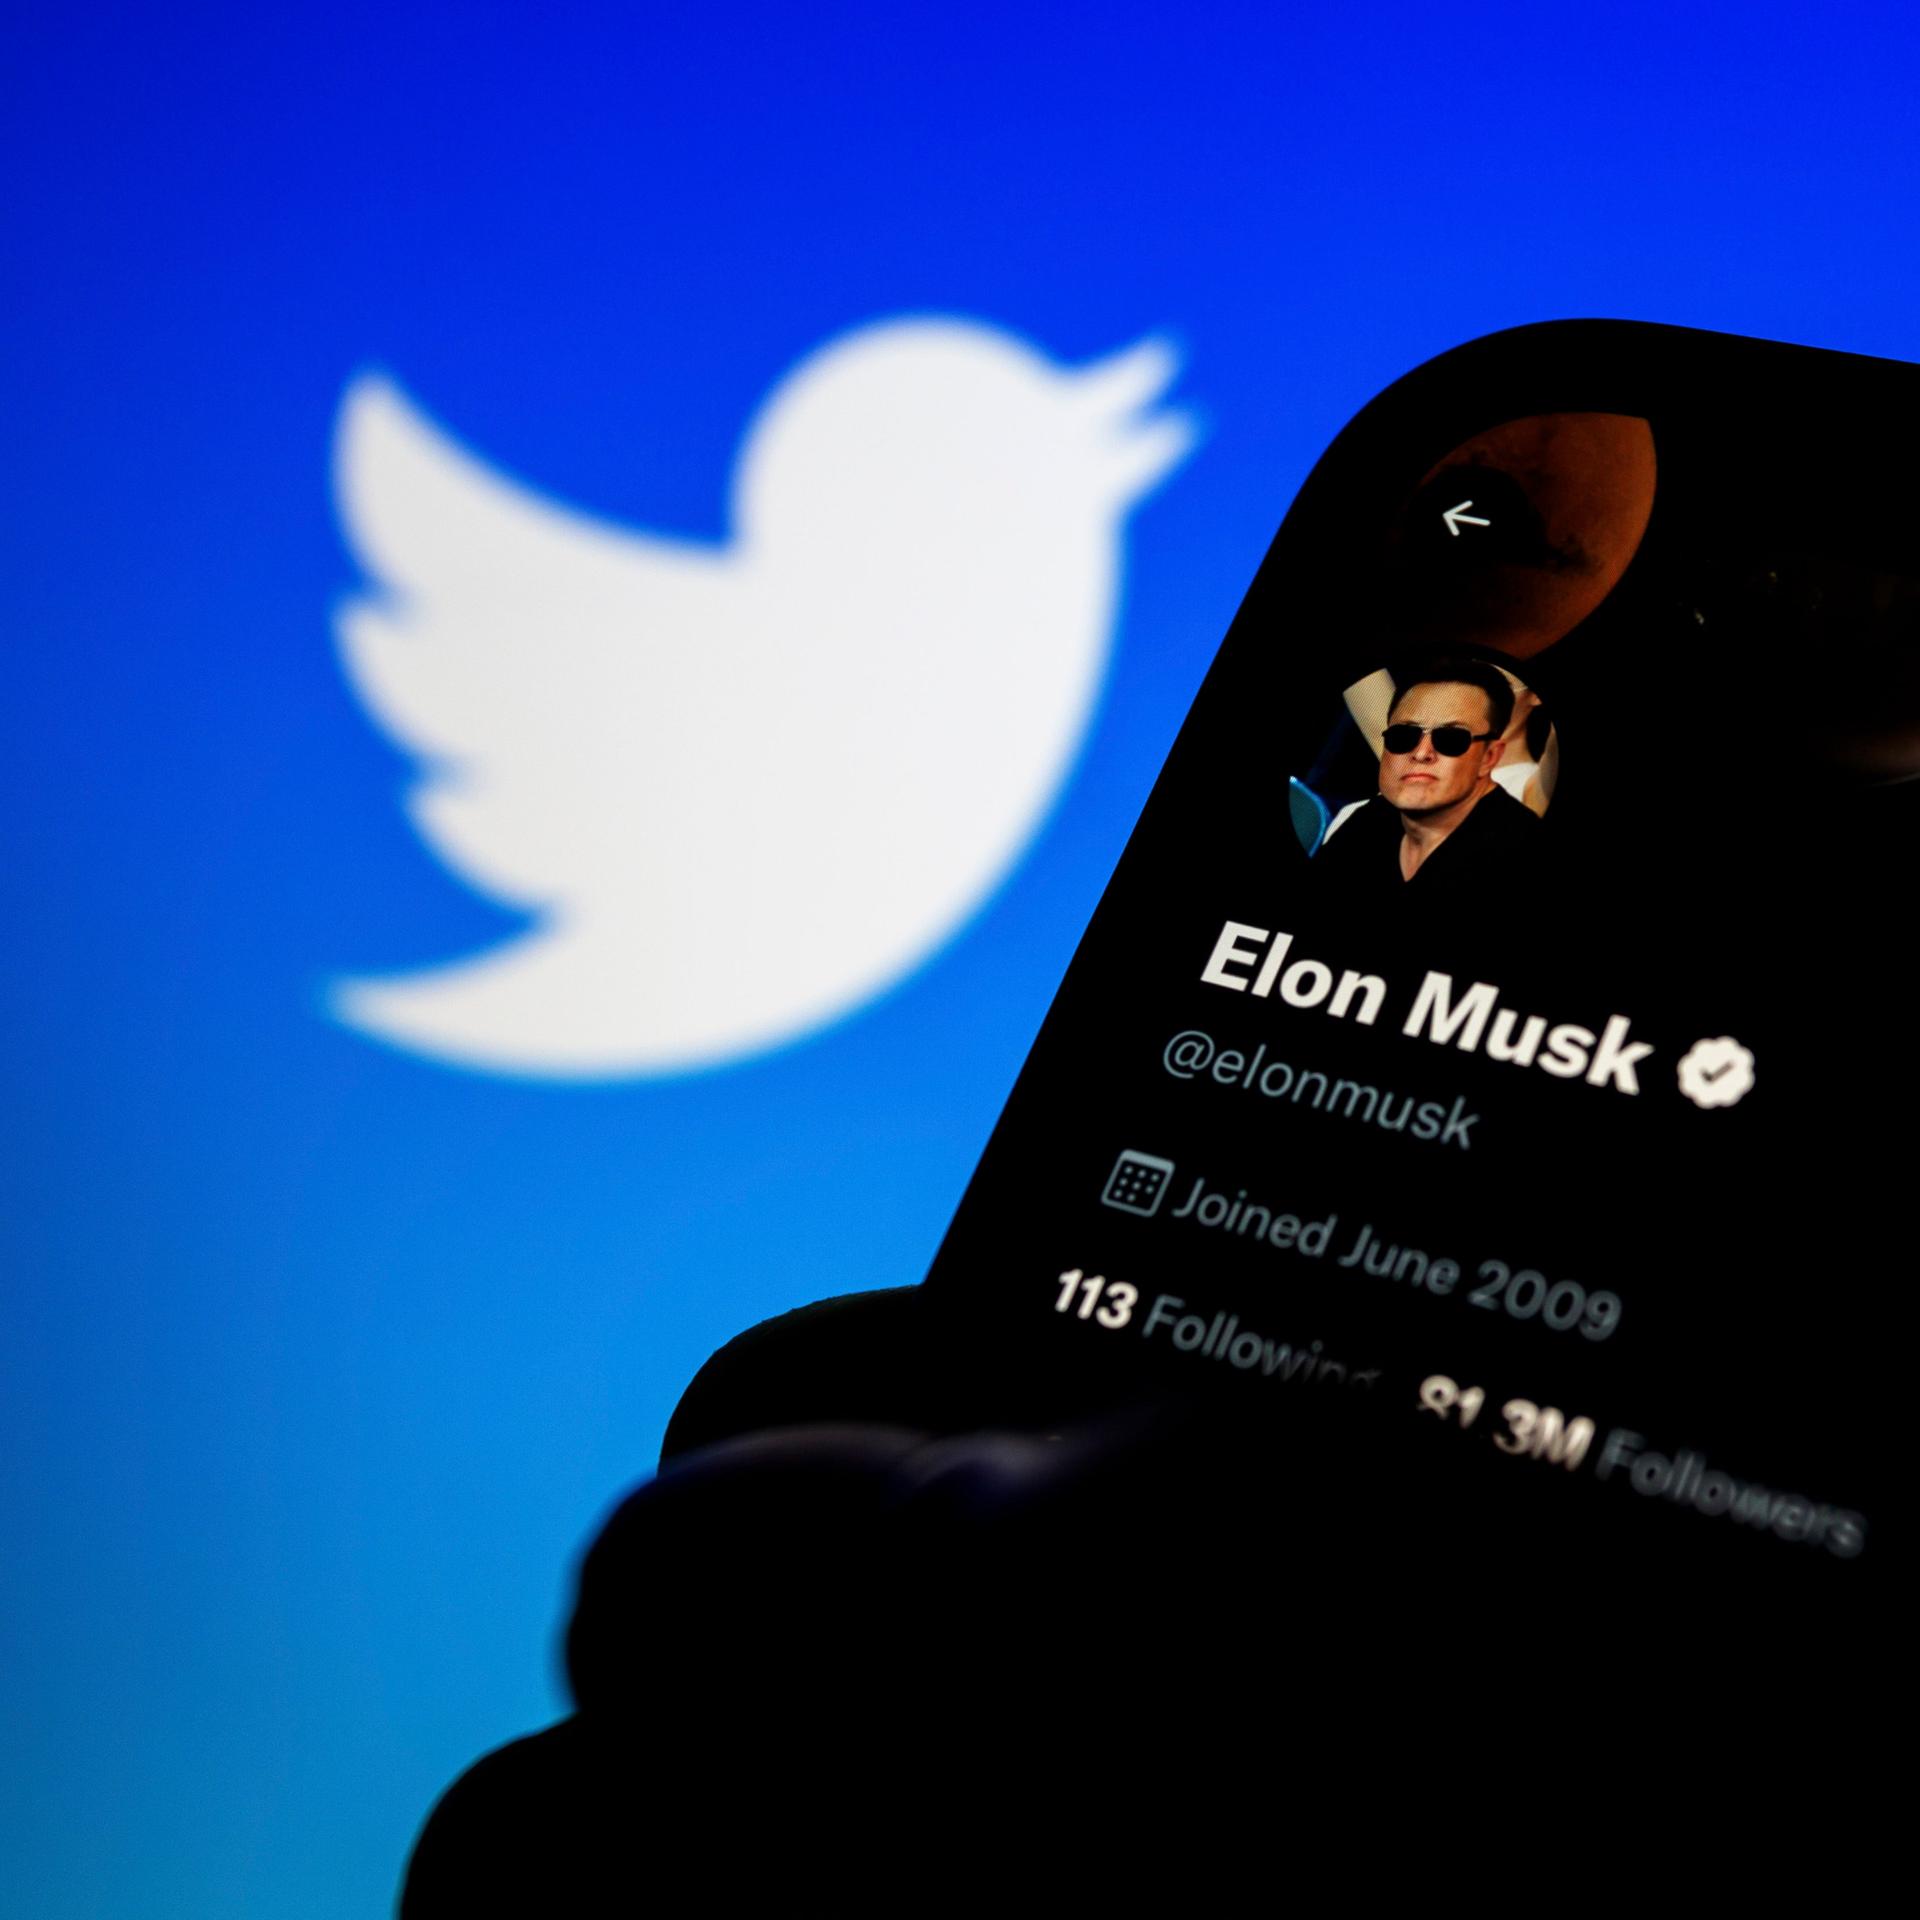 Symbolbild: Ein Smartphone mit dem Bild von Elon Musk auf dem Bildschirm, im Hintergrund das Logo der Plattform "Twitter".